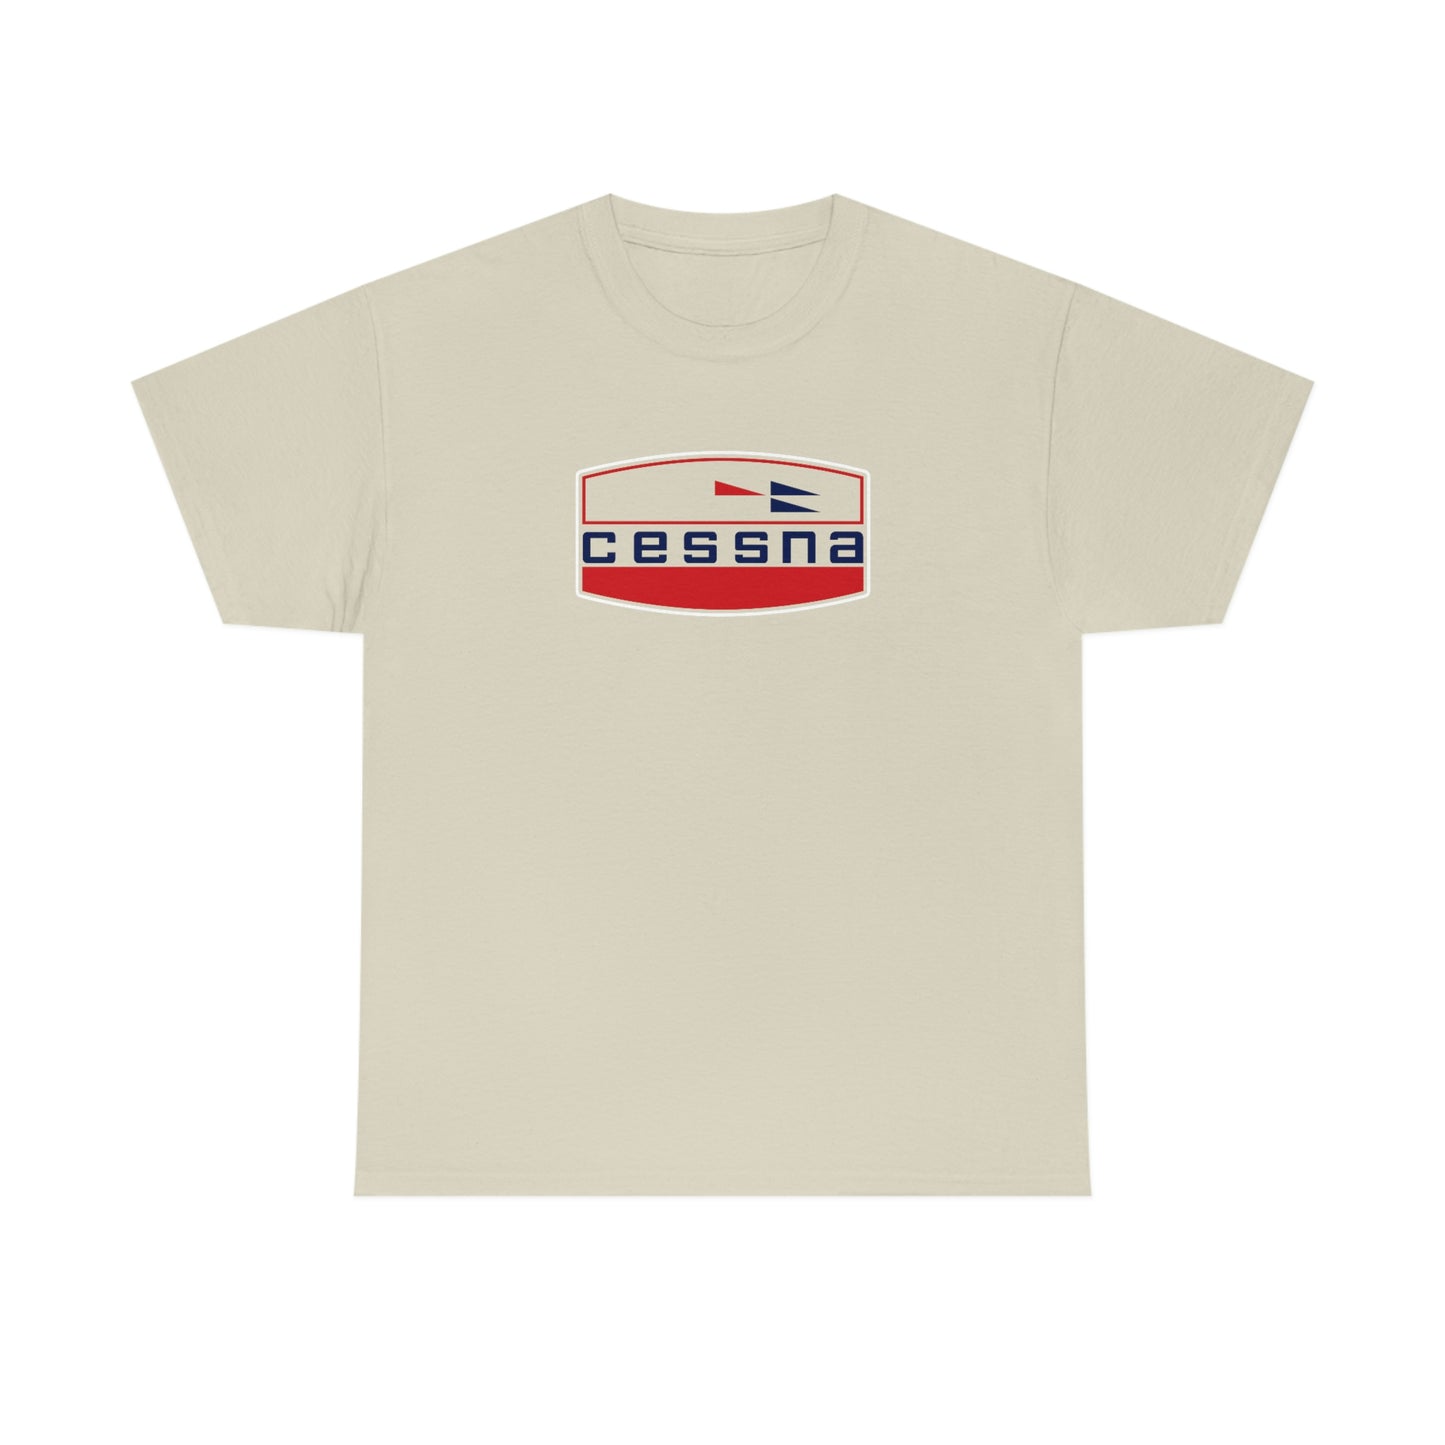 Cessna T-Shirt